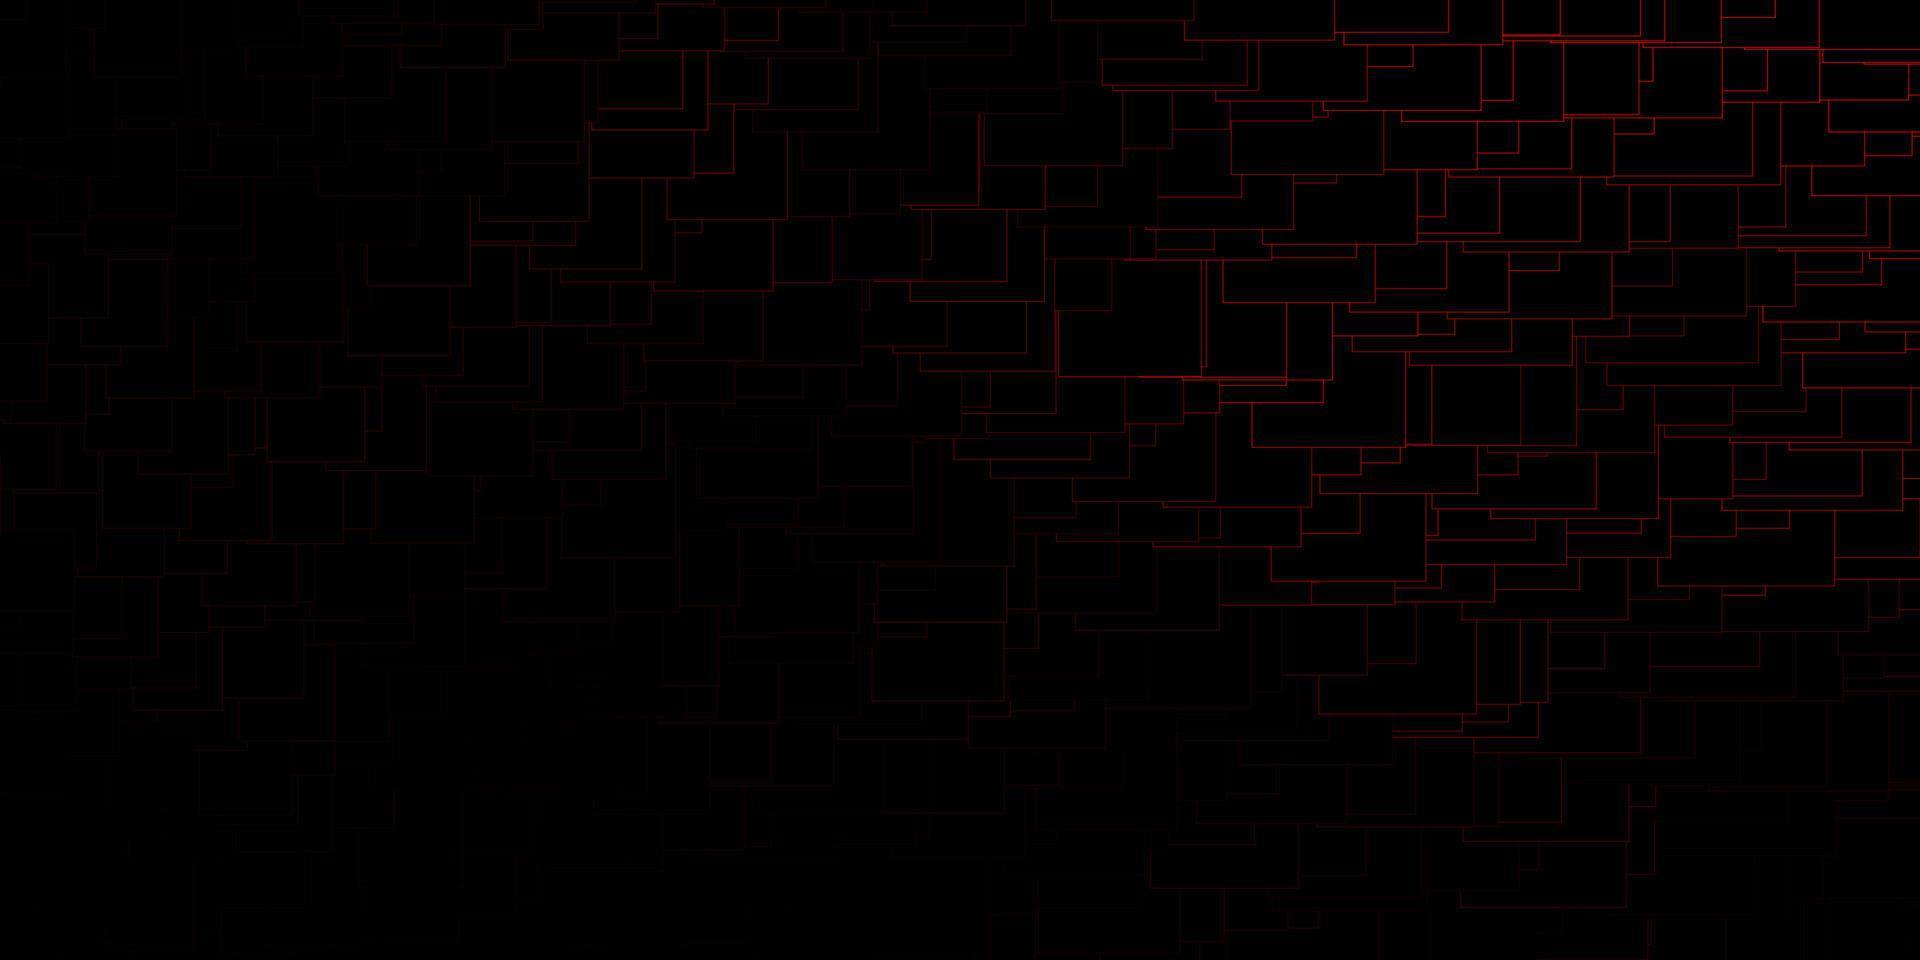 sfondo vettoriale rosso scuro in stile poligonale.